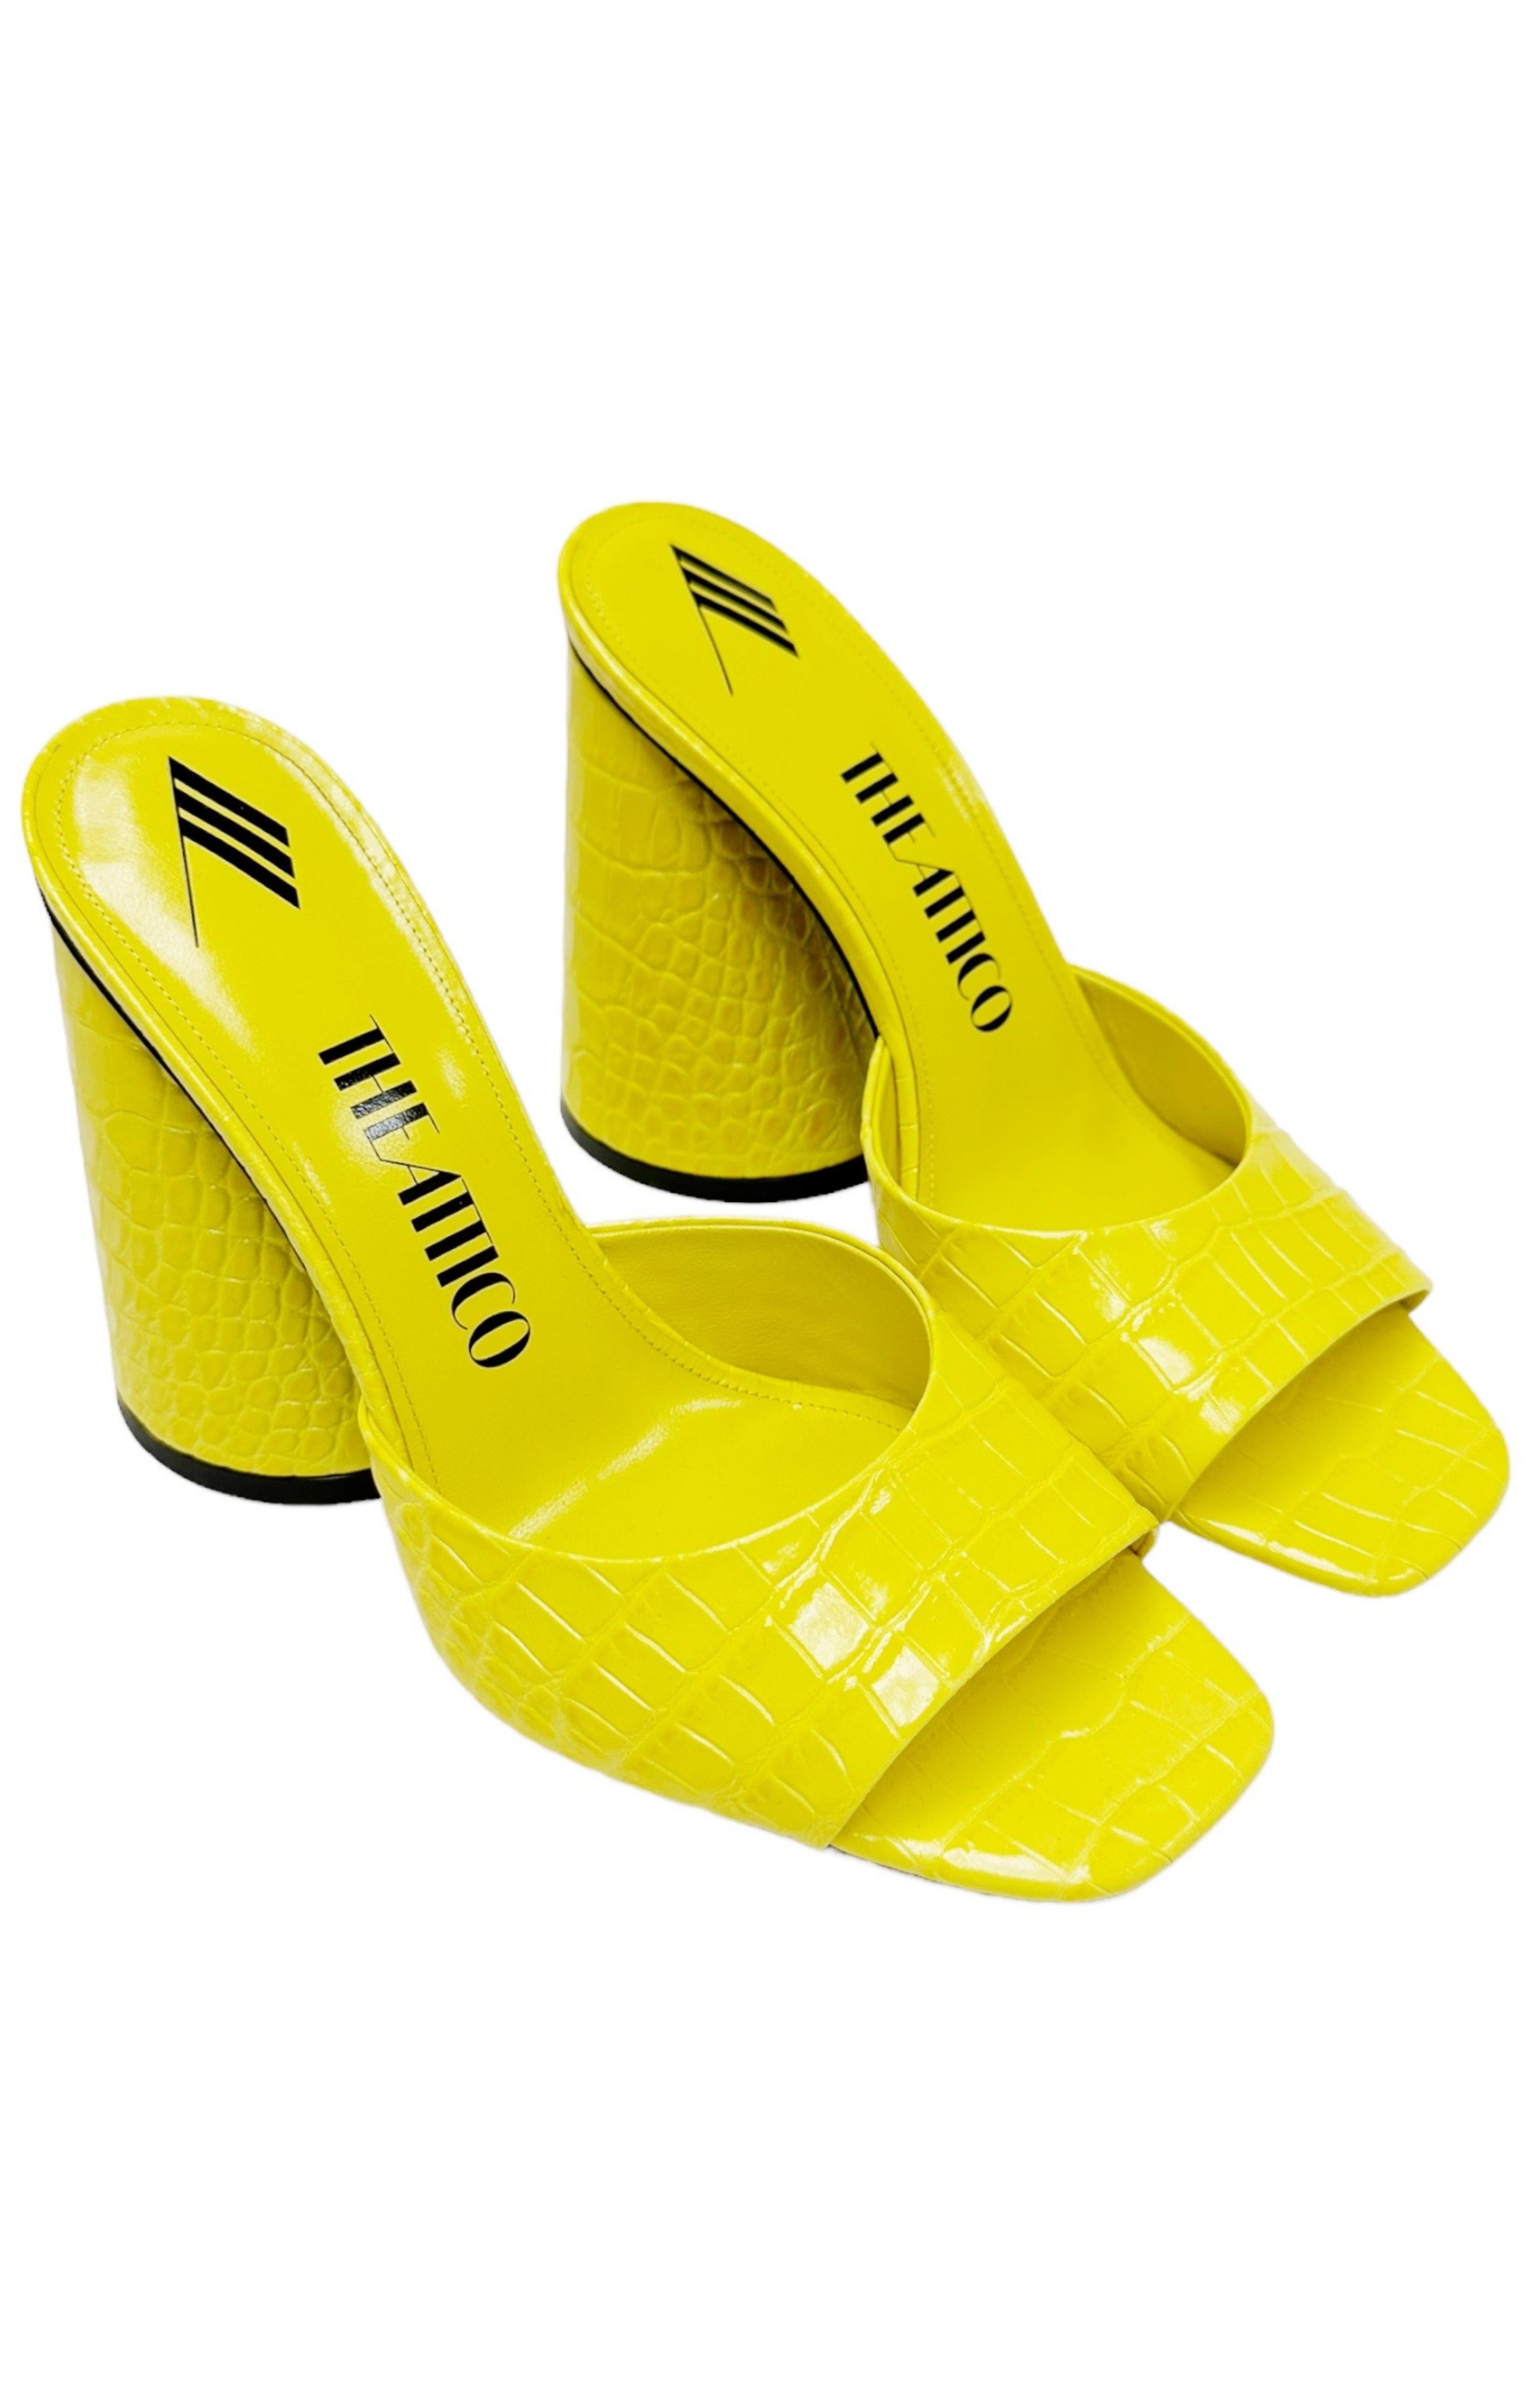 THE ATTICO (NEW) Sandals Size: EUR 38.5